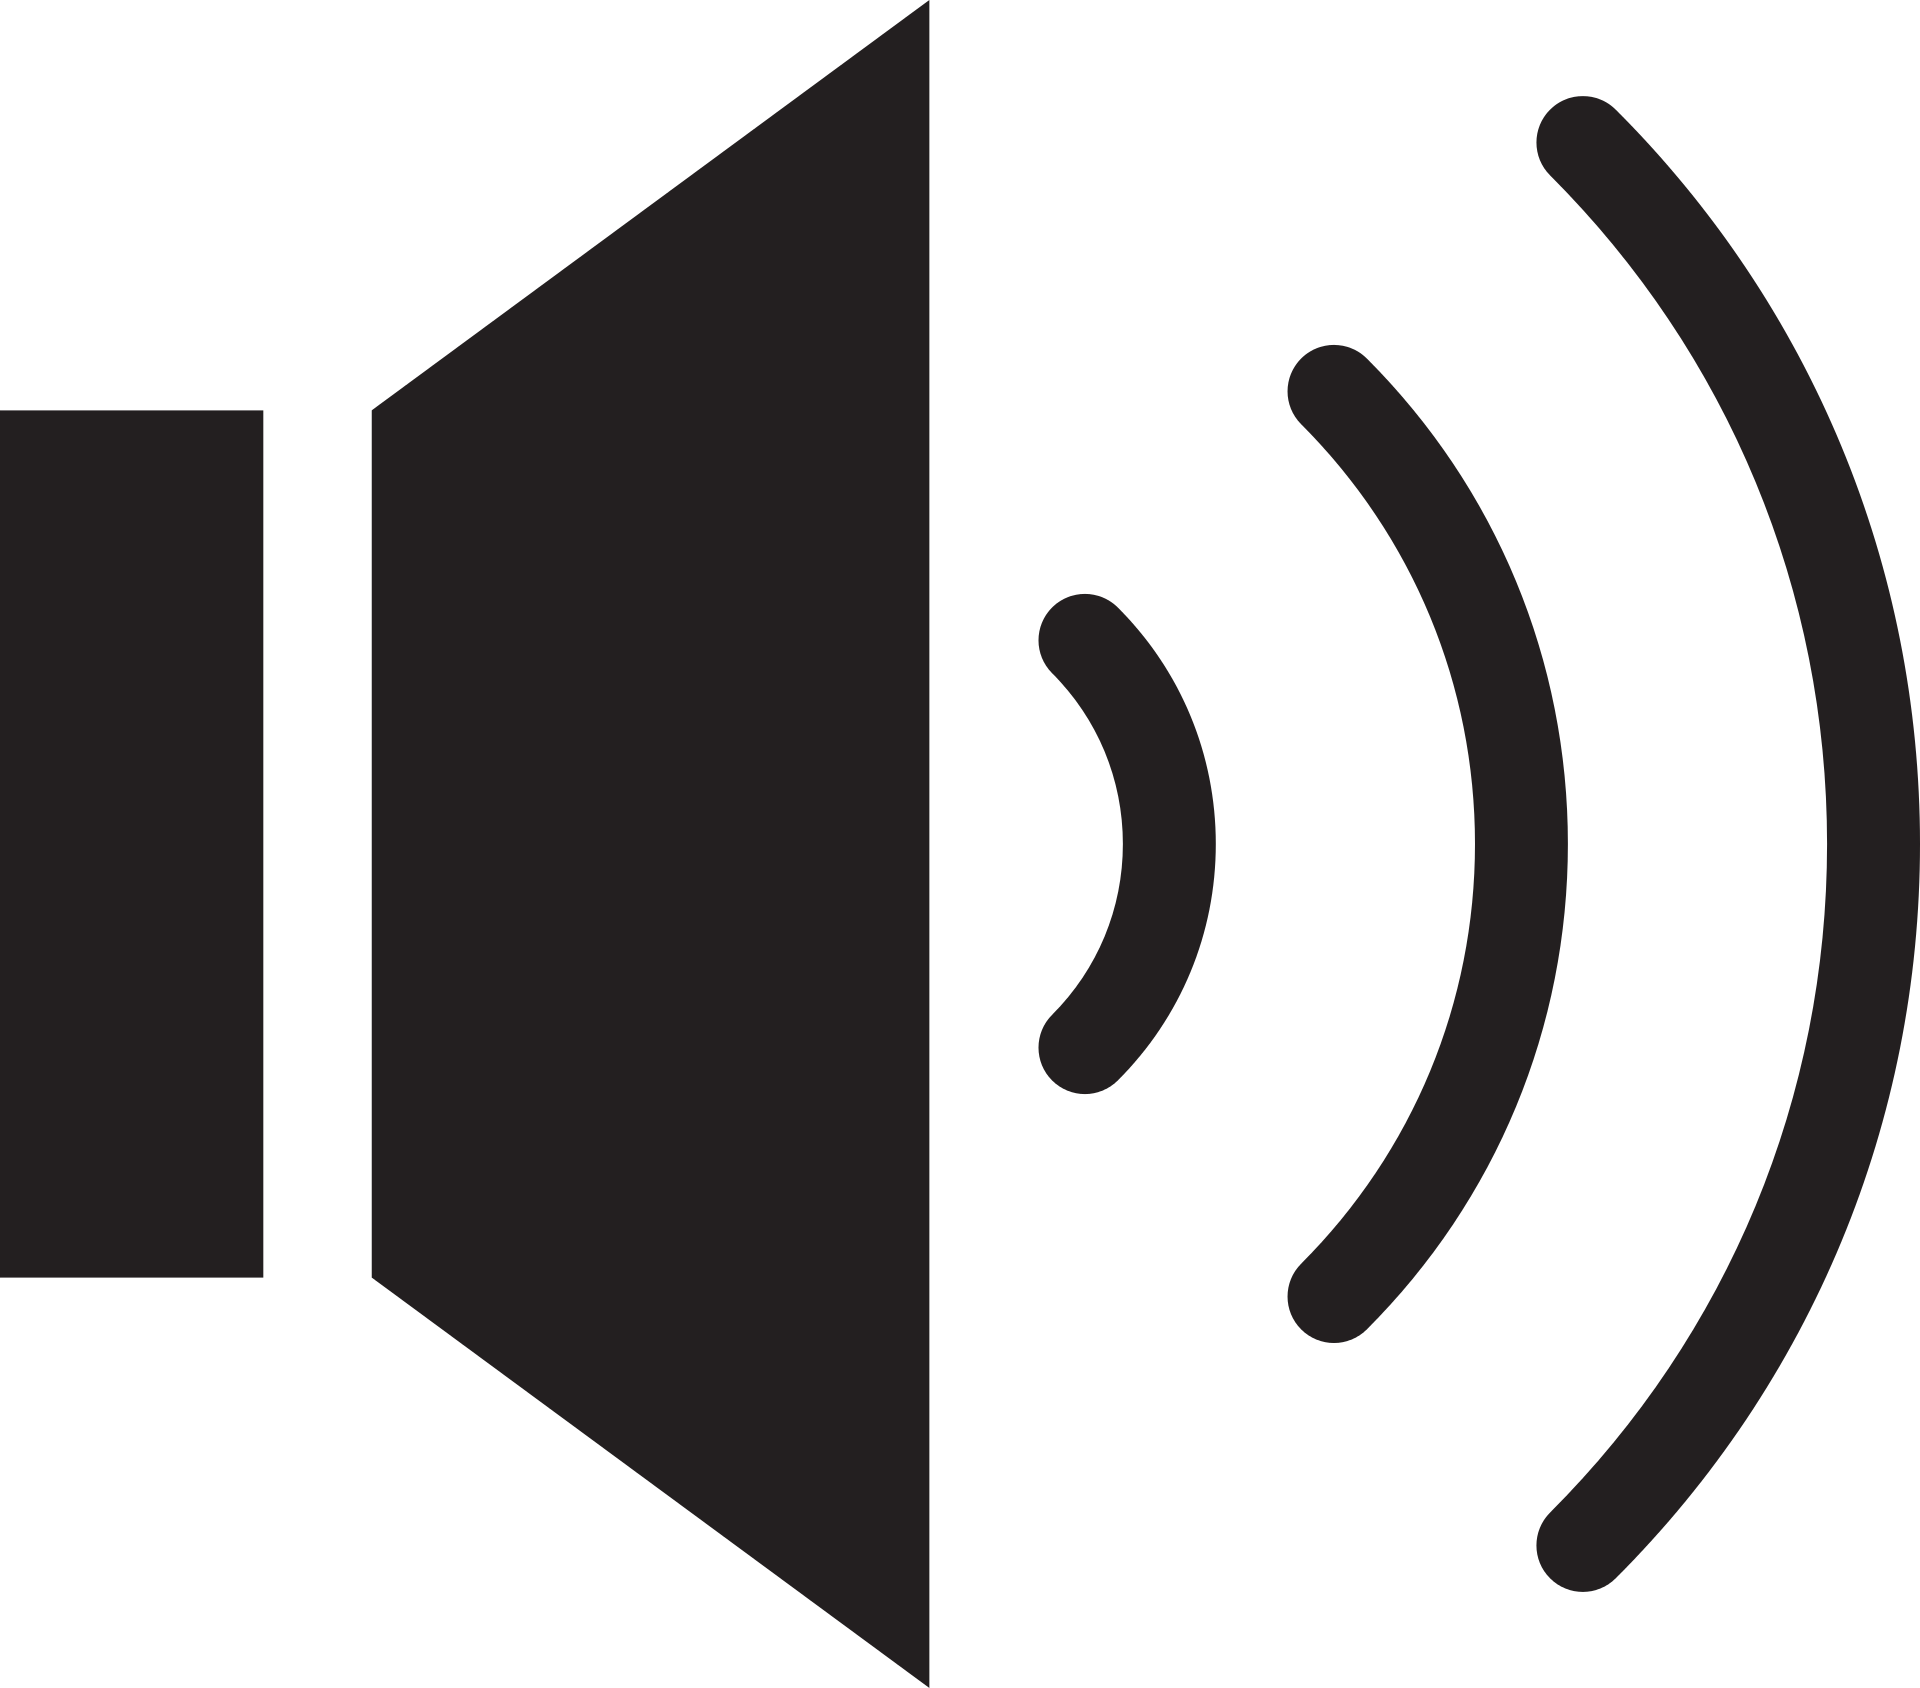 sound icon, listen, speaker